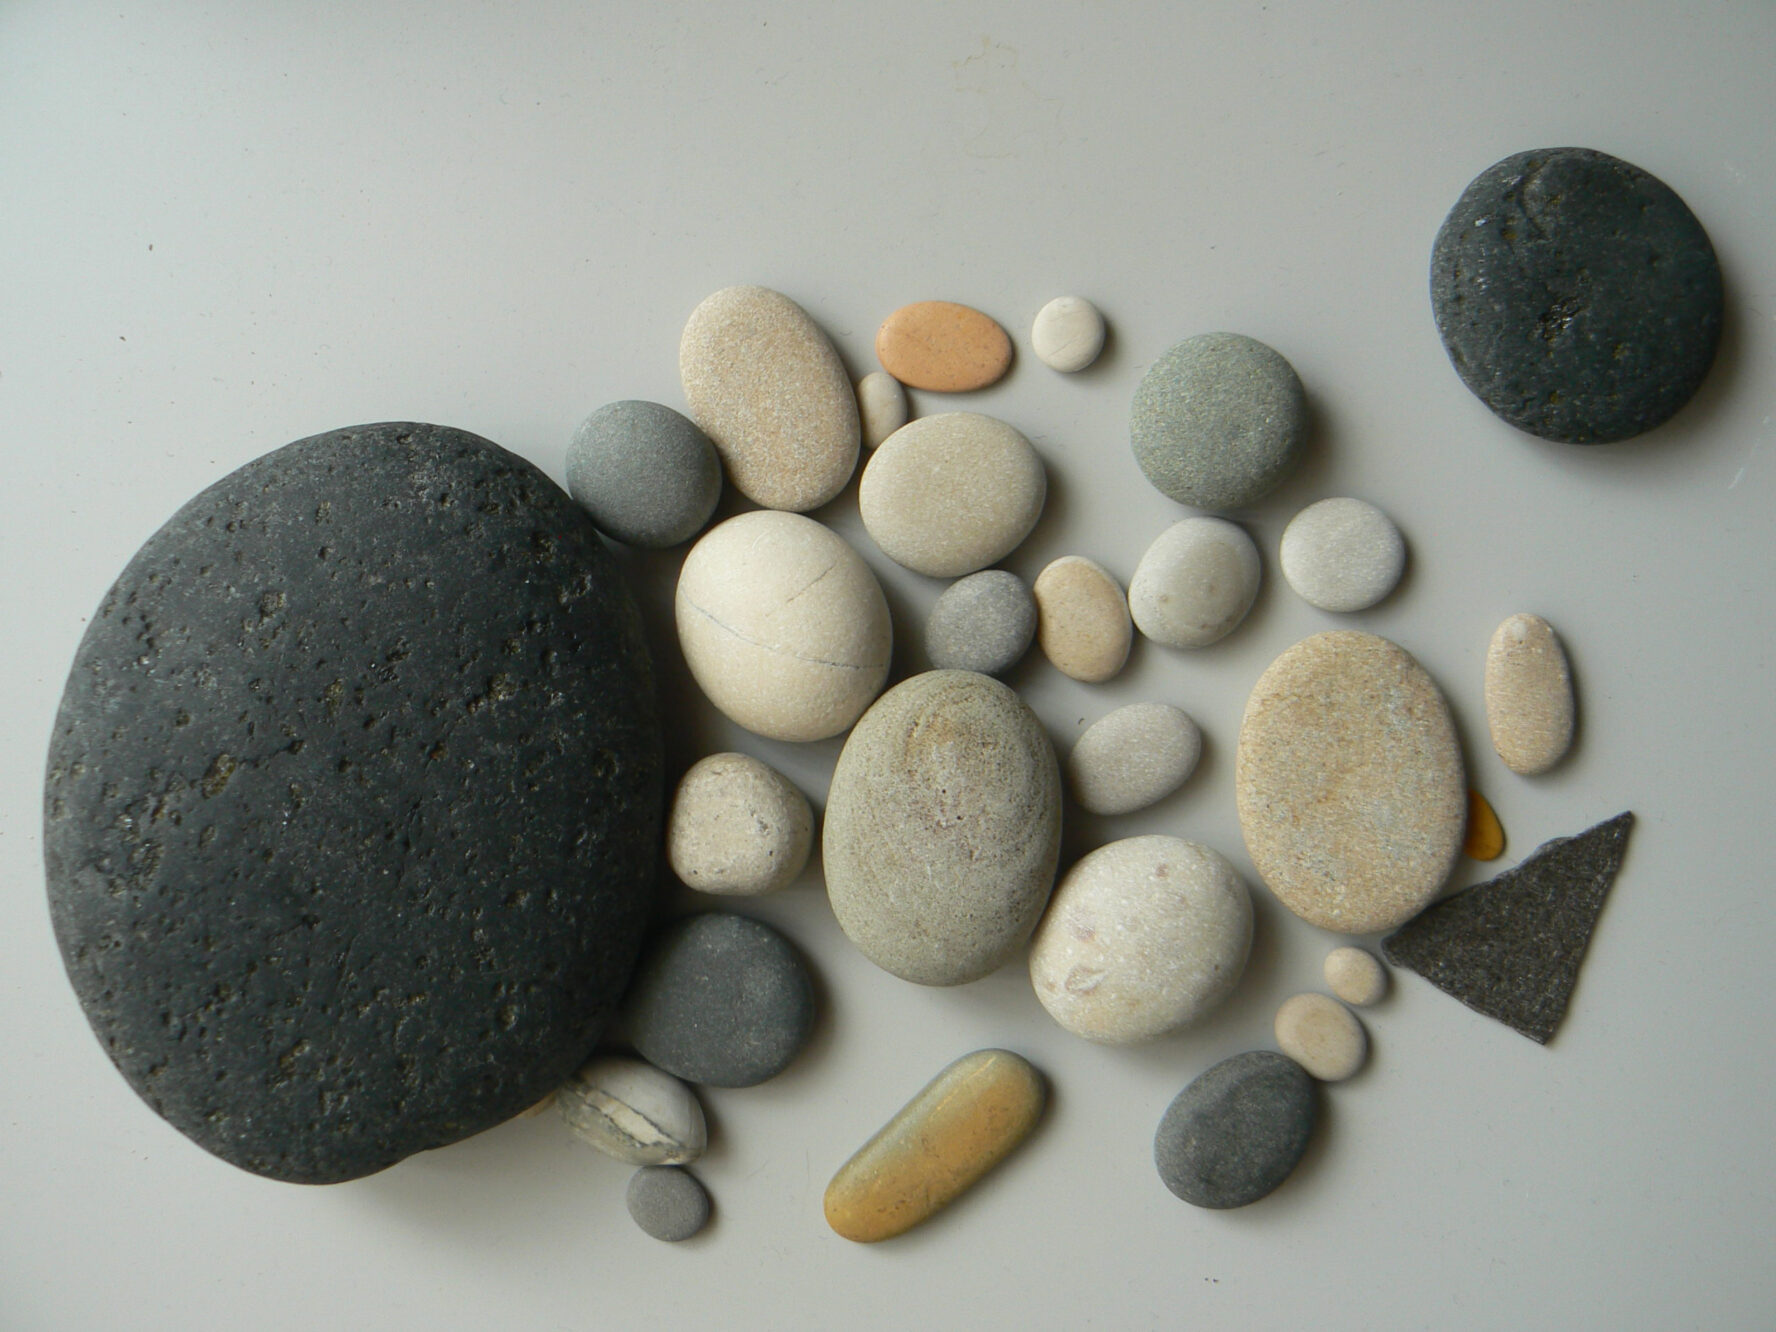 Kieselsteine in verschiedenen Farben und Größen liegen auf einem hellgrauen Untergrund.